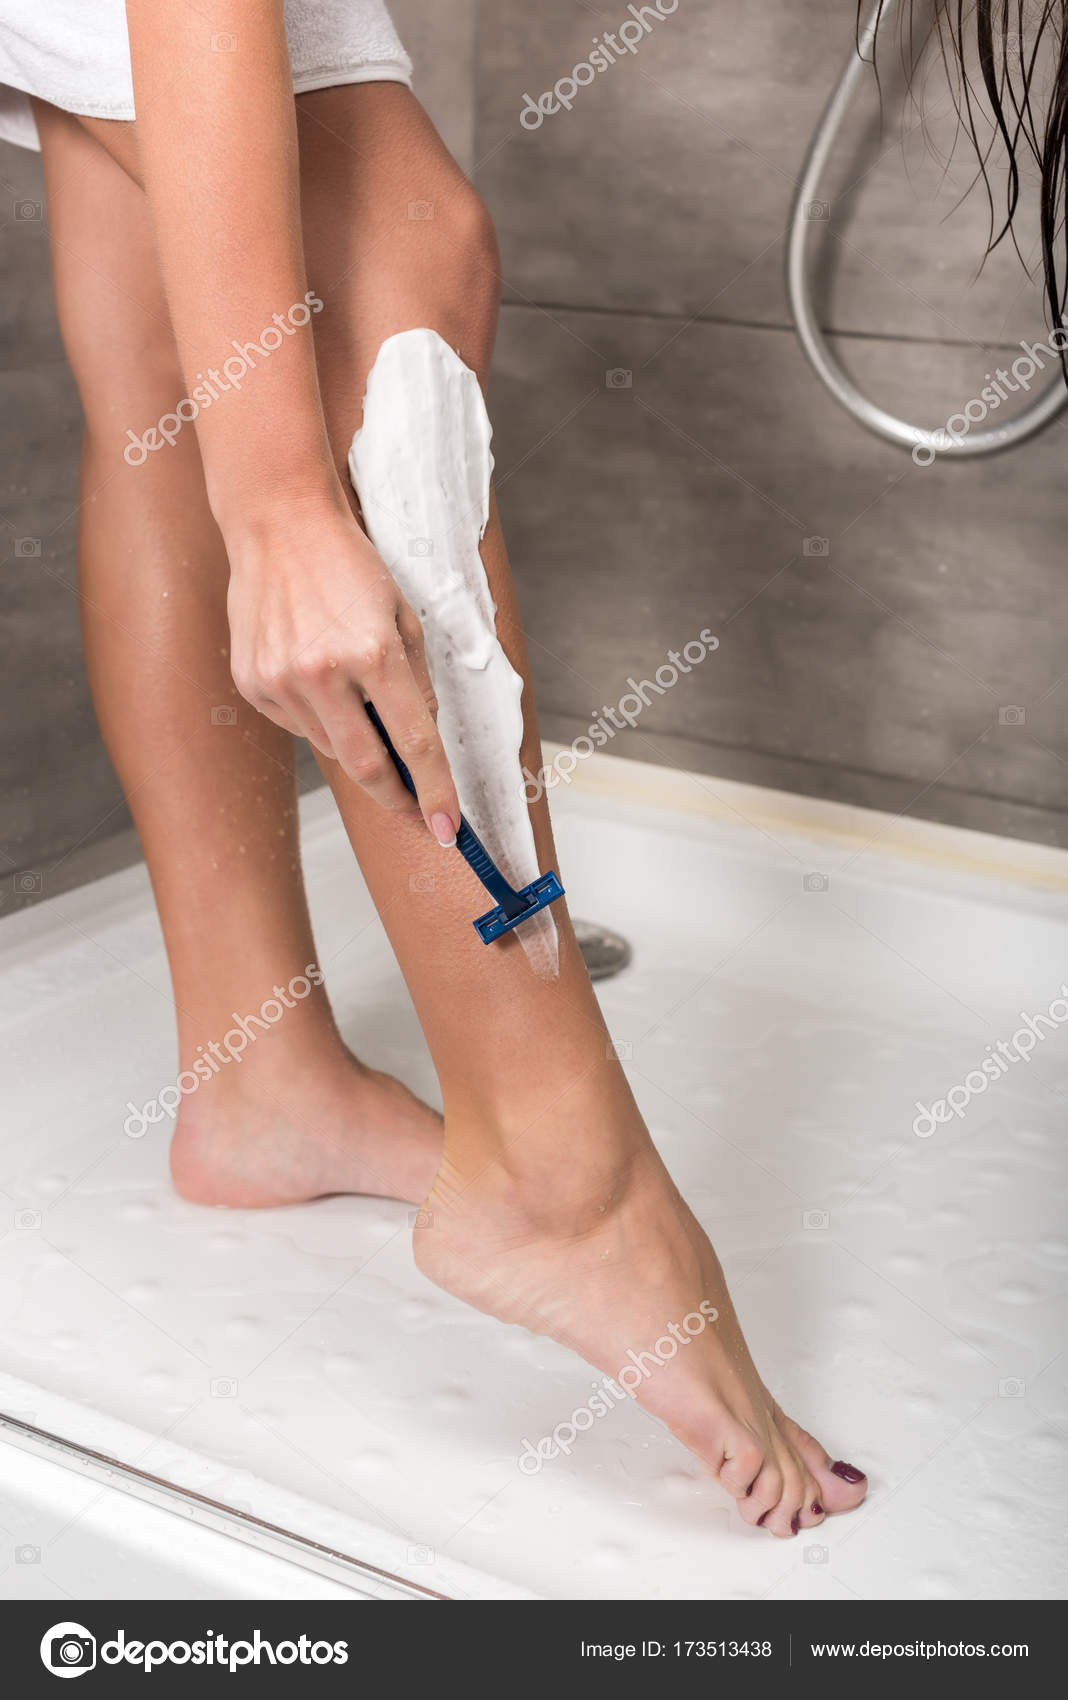 Girl shaving shower